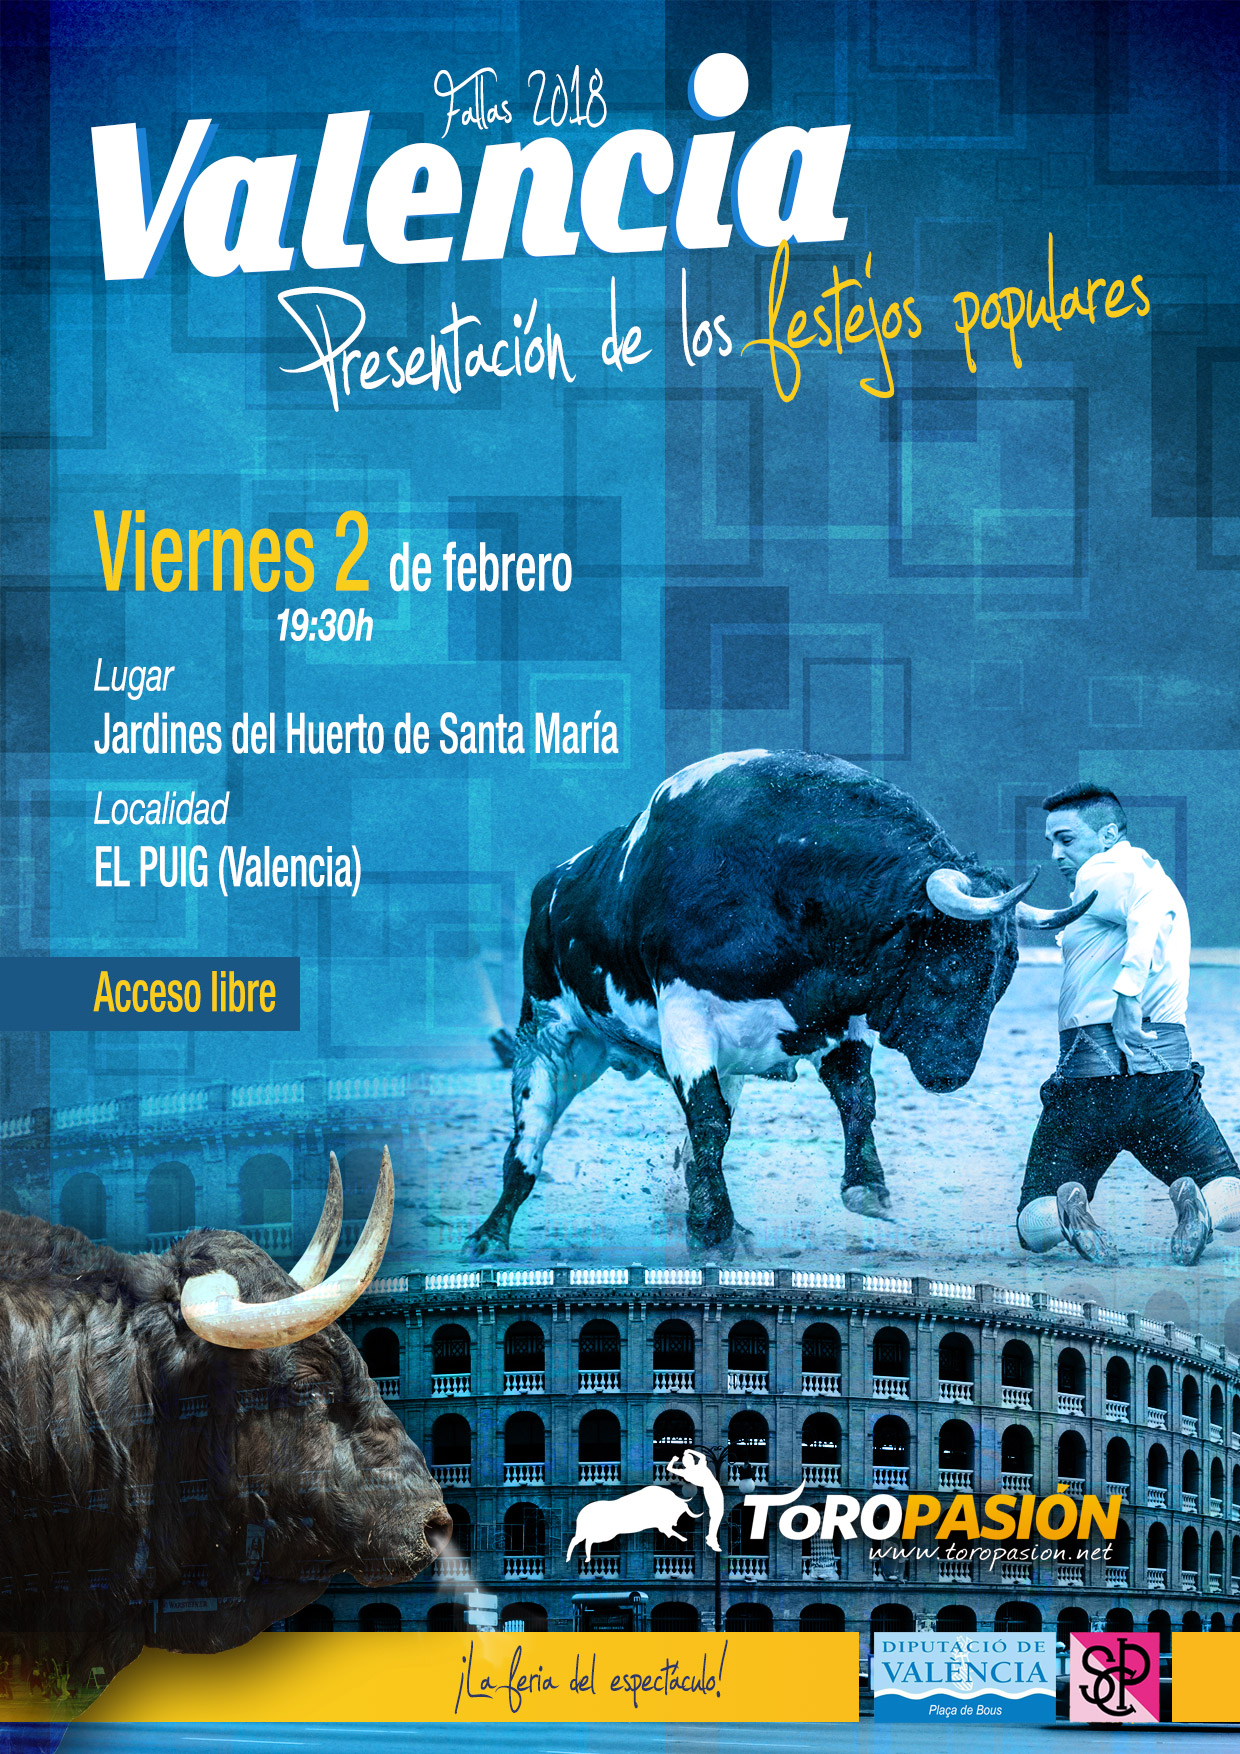 Este viernes se presenta en El Puig (Valencia) la feria taurina de